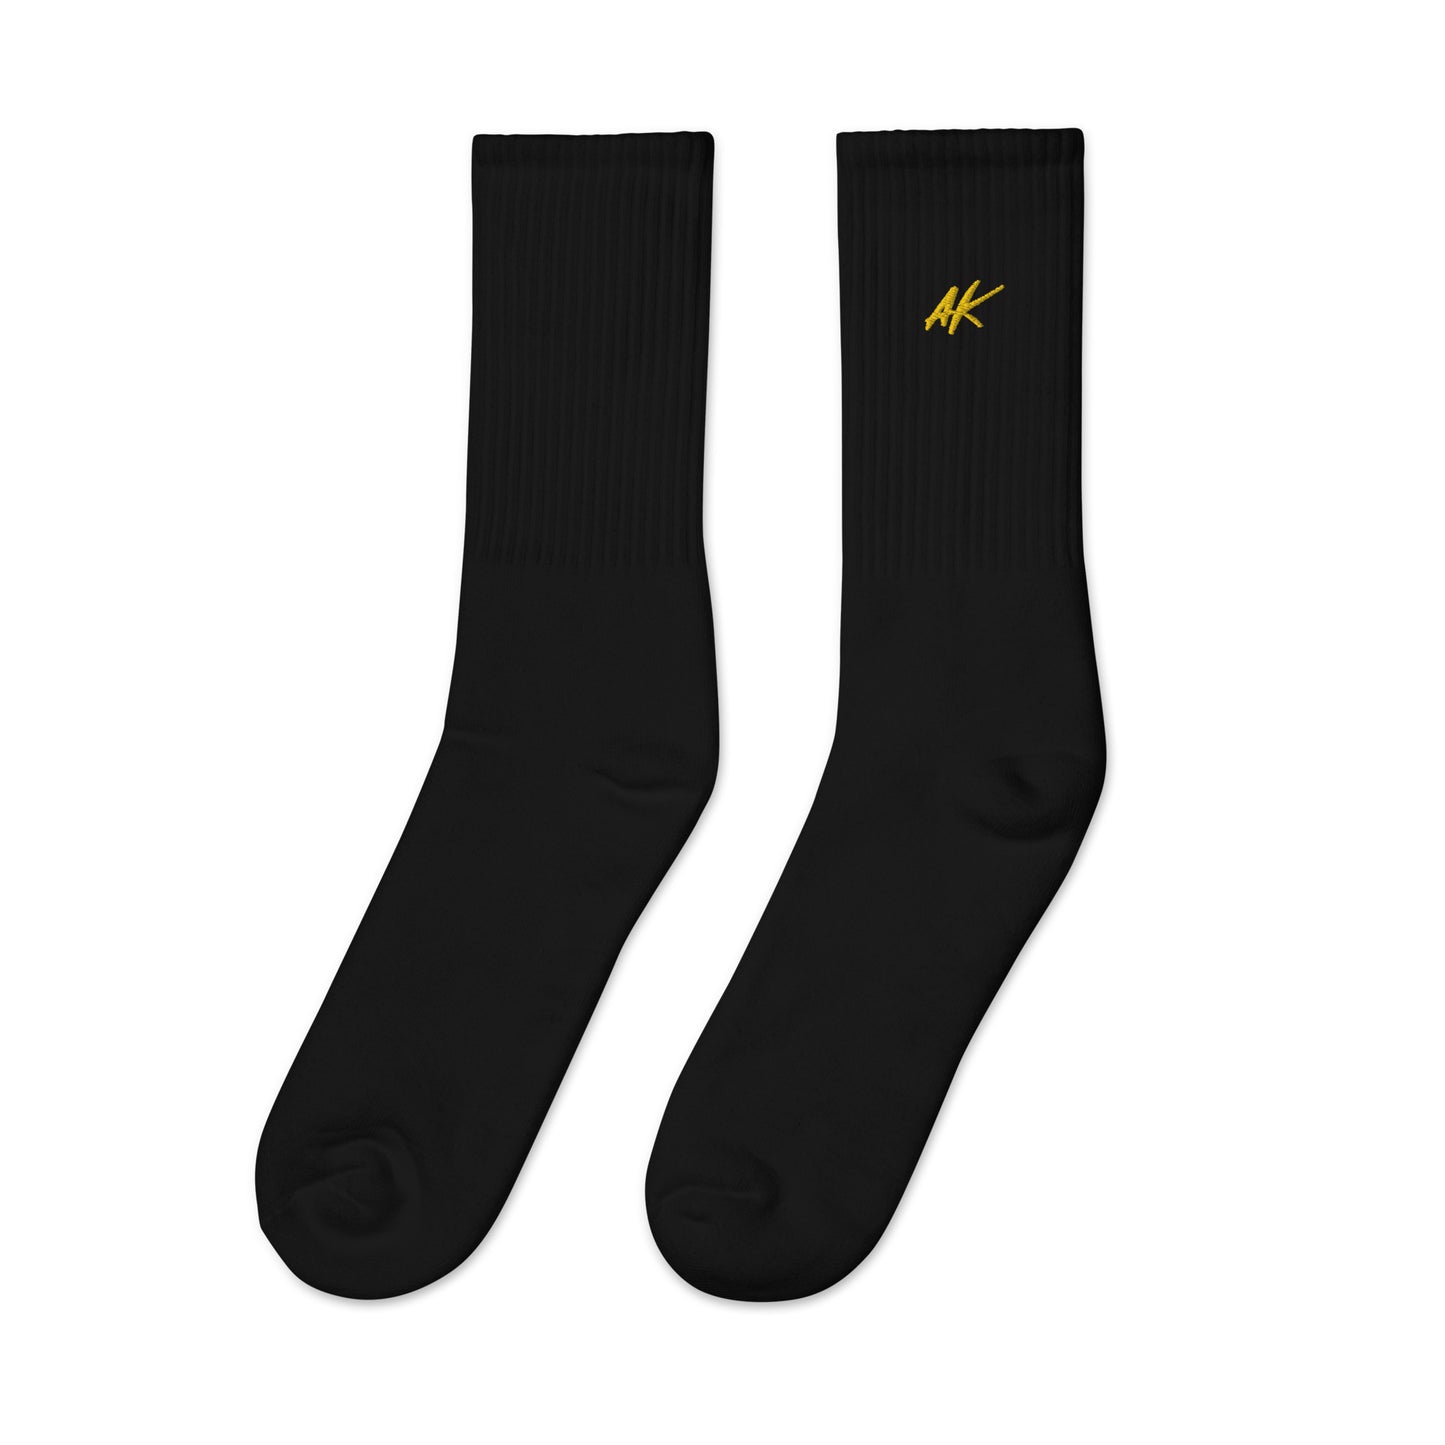 AK socks (gold)